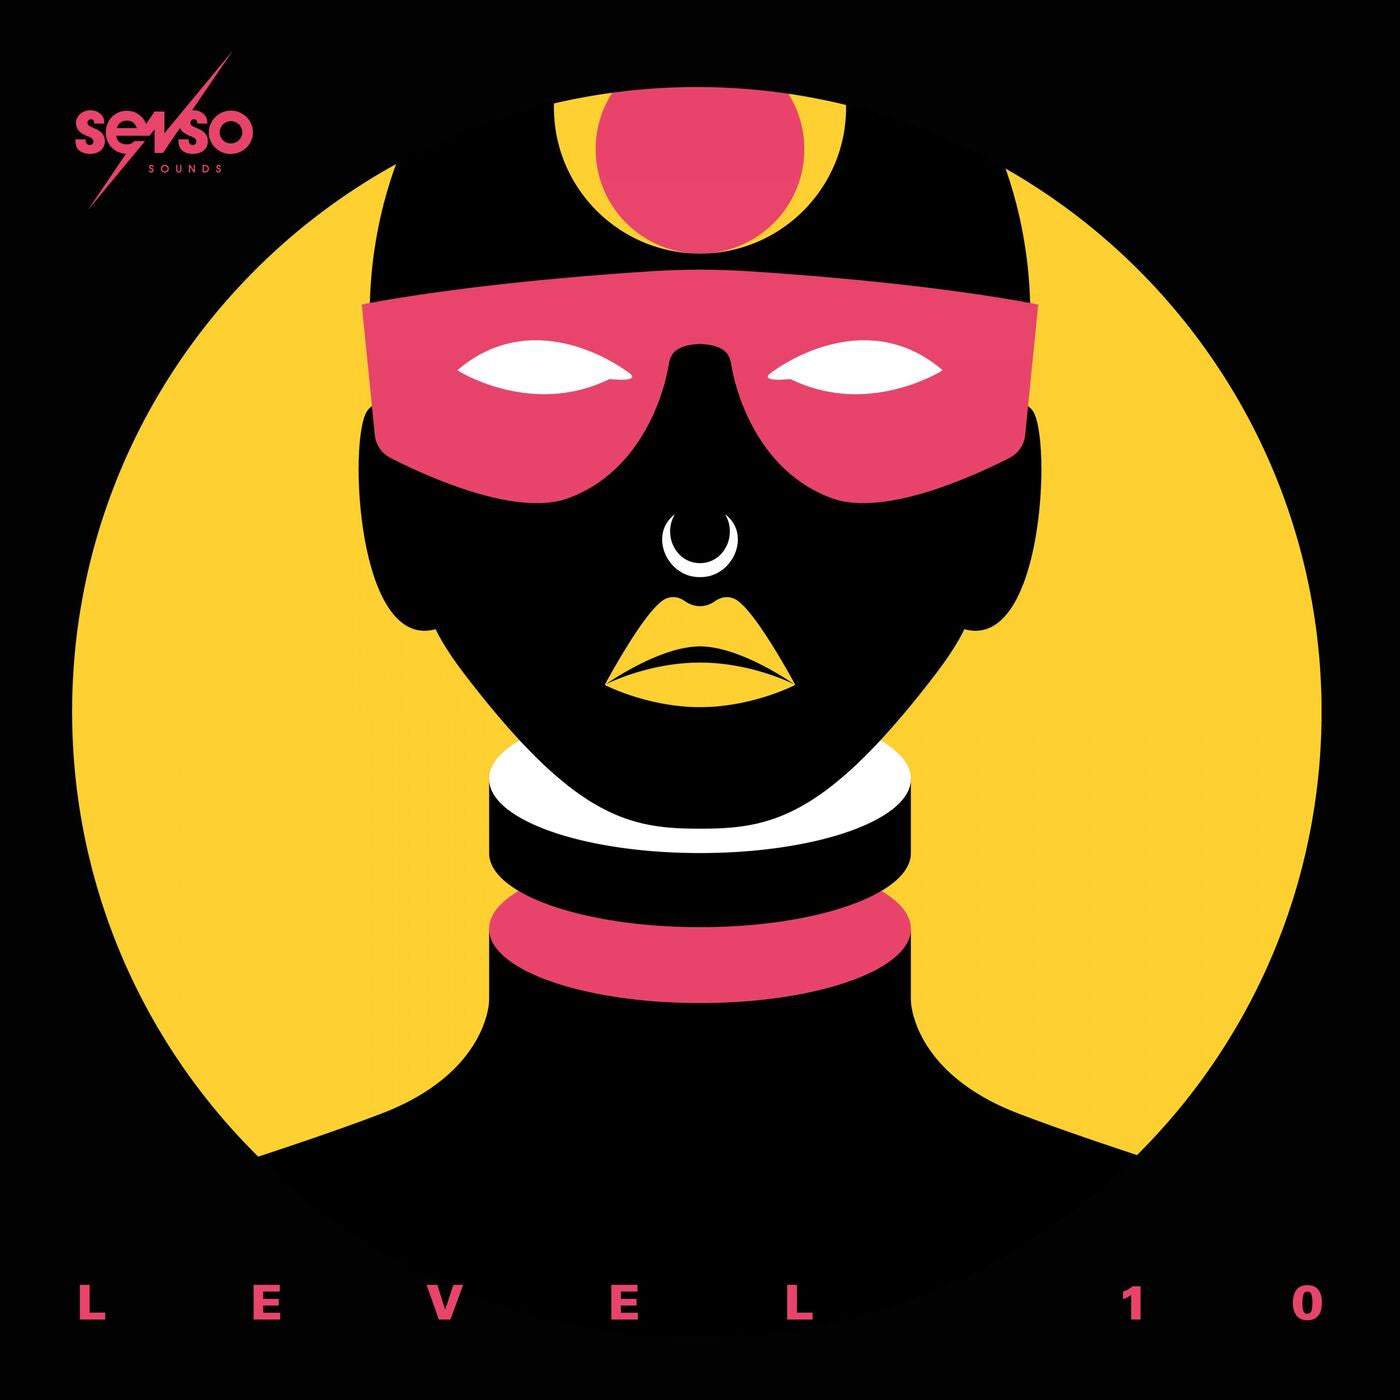 image cover: ANDATA, Hiago Pauli, AIO, LEKTRK - Senso Sounds Level 10 / SENSO093